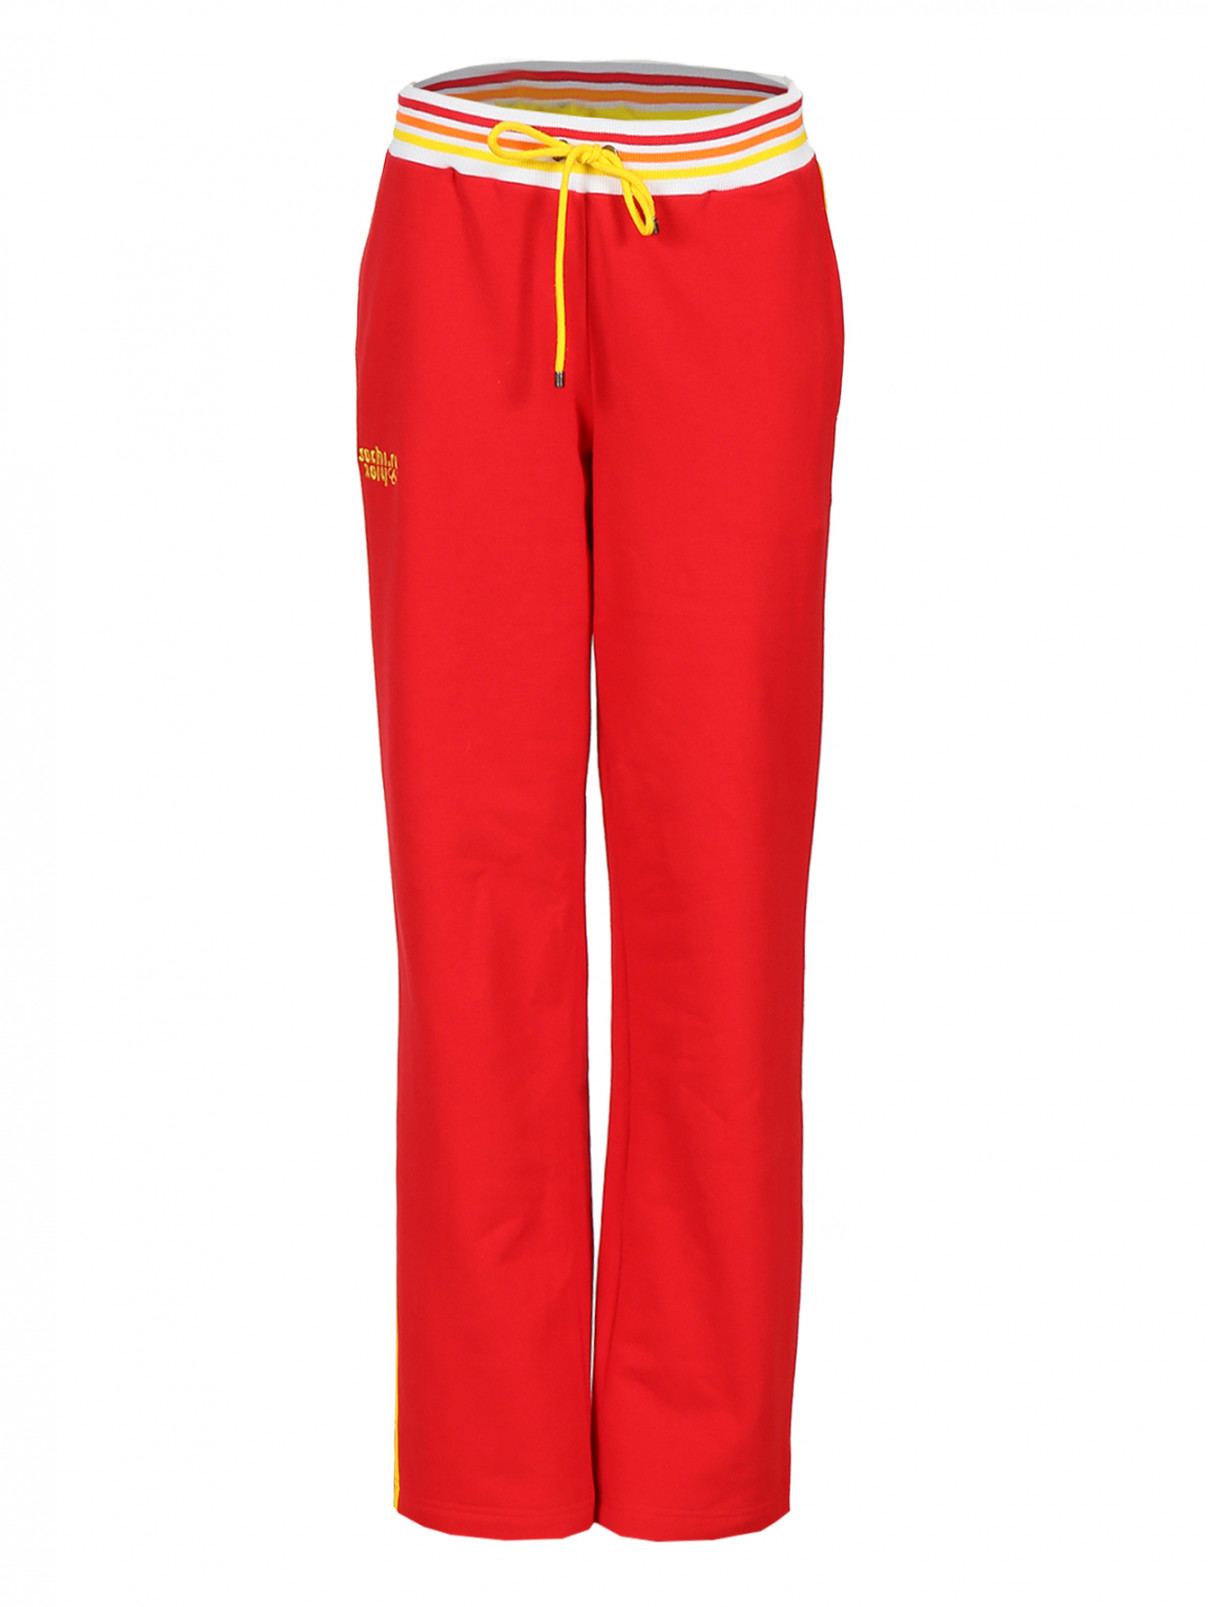 Спортивне брюки Sochi 2014  –  Общий вид  – Цвет:  Красный